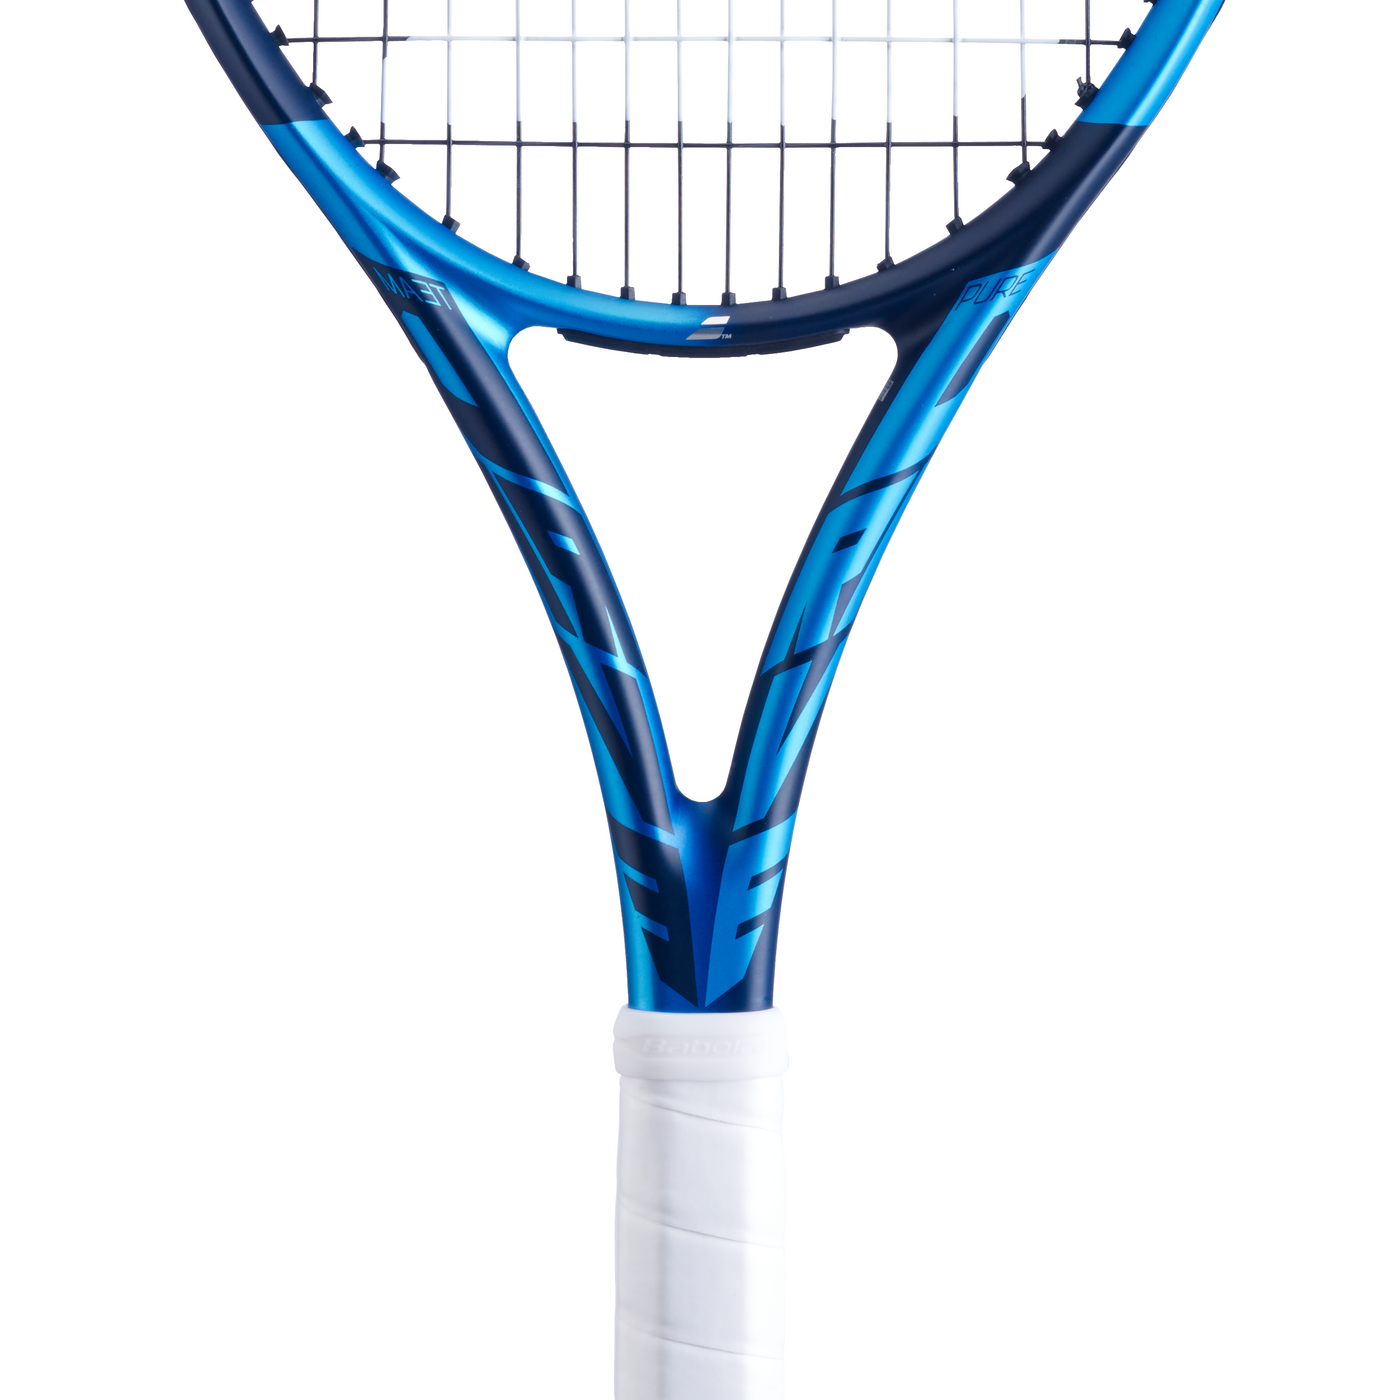 Babolat Pure Drive Team - 2021 Tennis Racquet